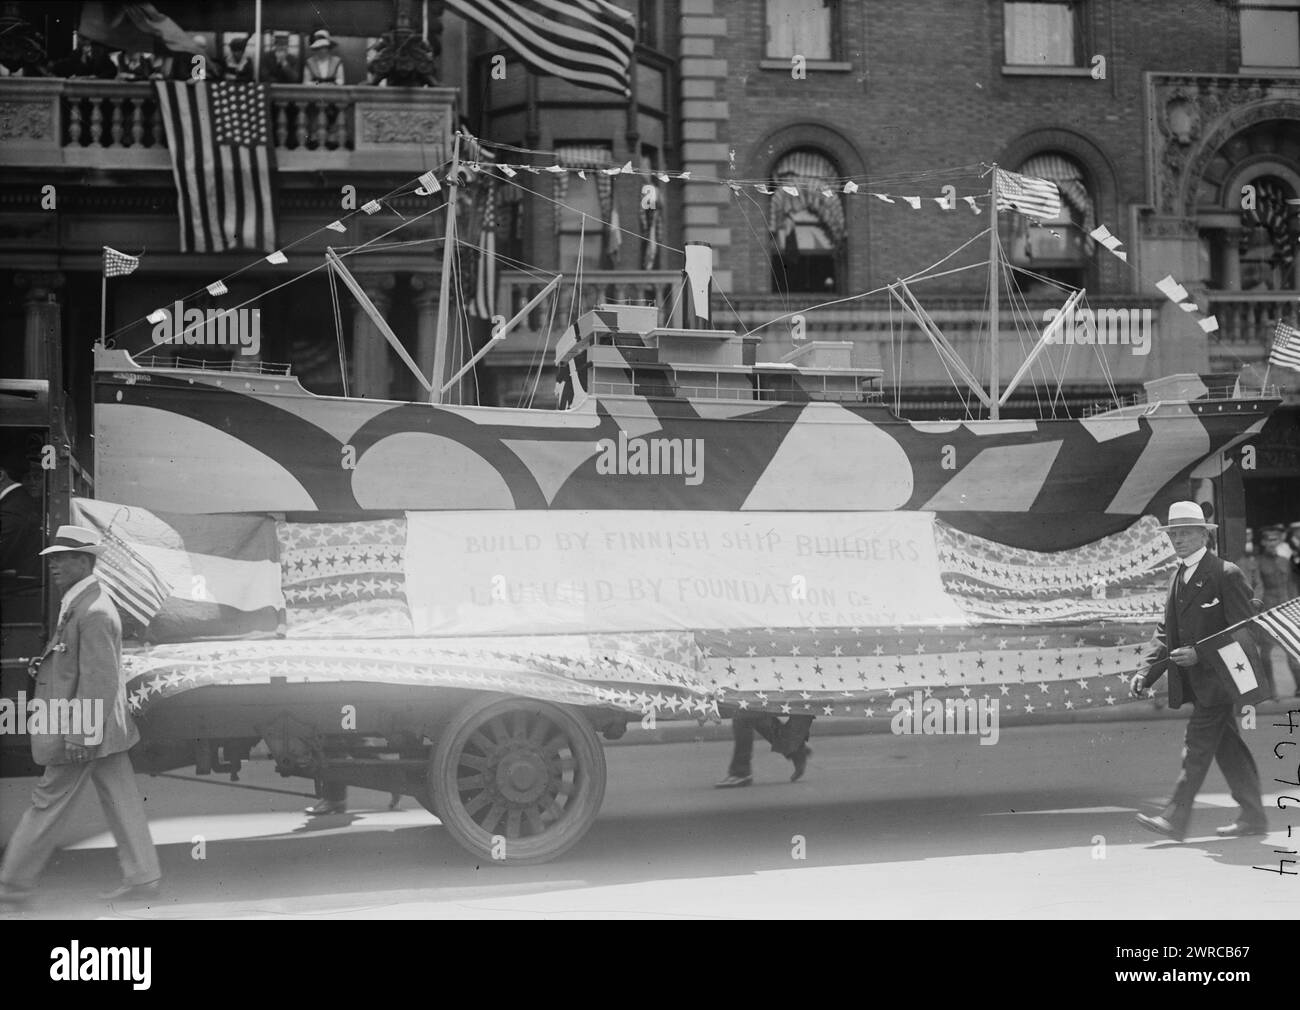 4 luglio, la fotografia mostra una parata del 4 luglio sulla Fifth Avenue, New York City, nel 1918. Un camion tira un modello di nave dipinto con abbagliante camuffamento con la scritta "costruito da costruttori navali finlandesi, lanciato dalla Foundation Co., Kearny, New Jersey"., 1918 luglio 4, Glass negative, 1 negativo: vetro Foto Stock